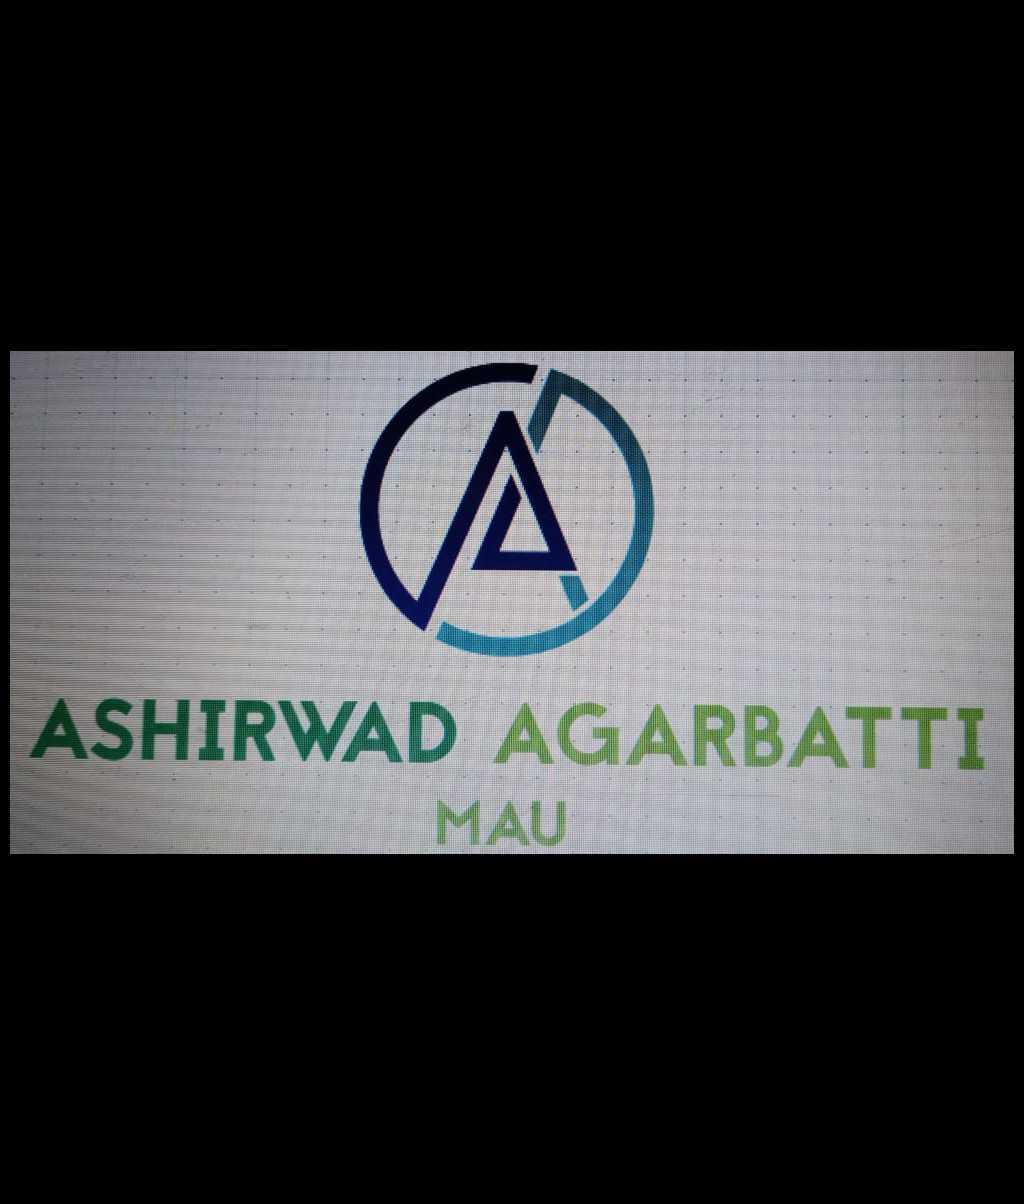 Aashirwad Agarbatti Work